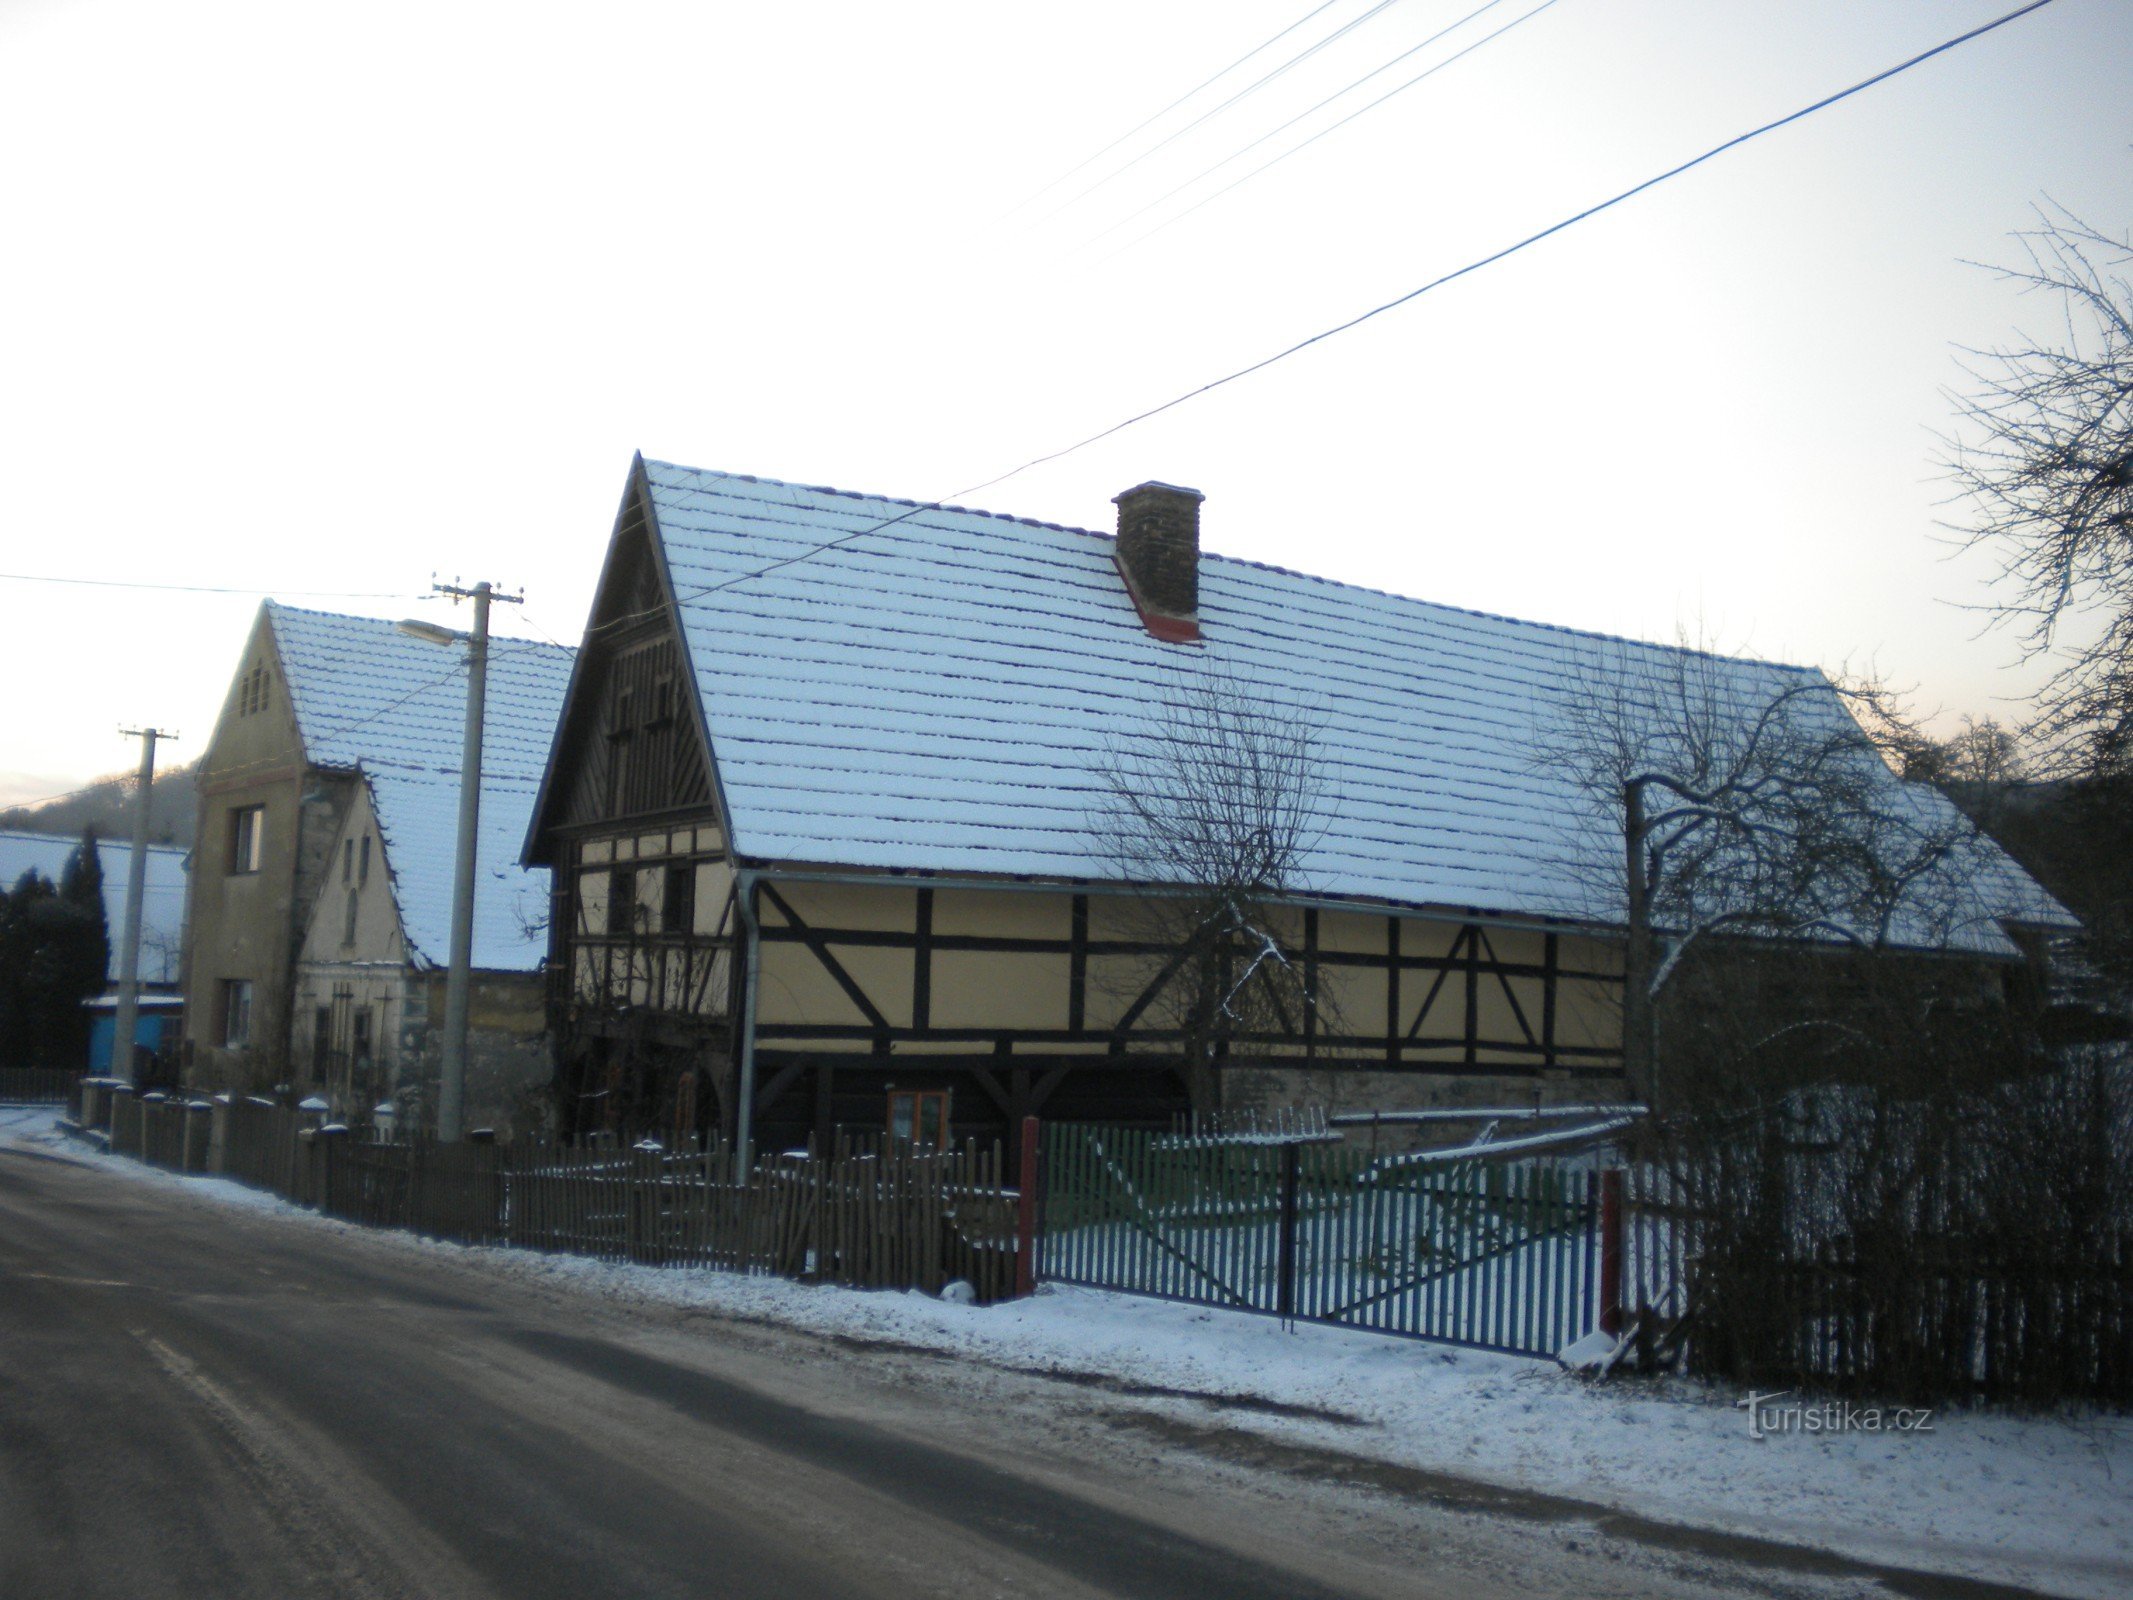 Ein Blockhaus in Hrušovce, das Bild wurde am 25.1.2014. Januar XNUMX aufgenommen.